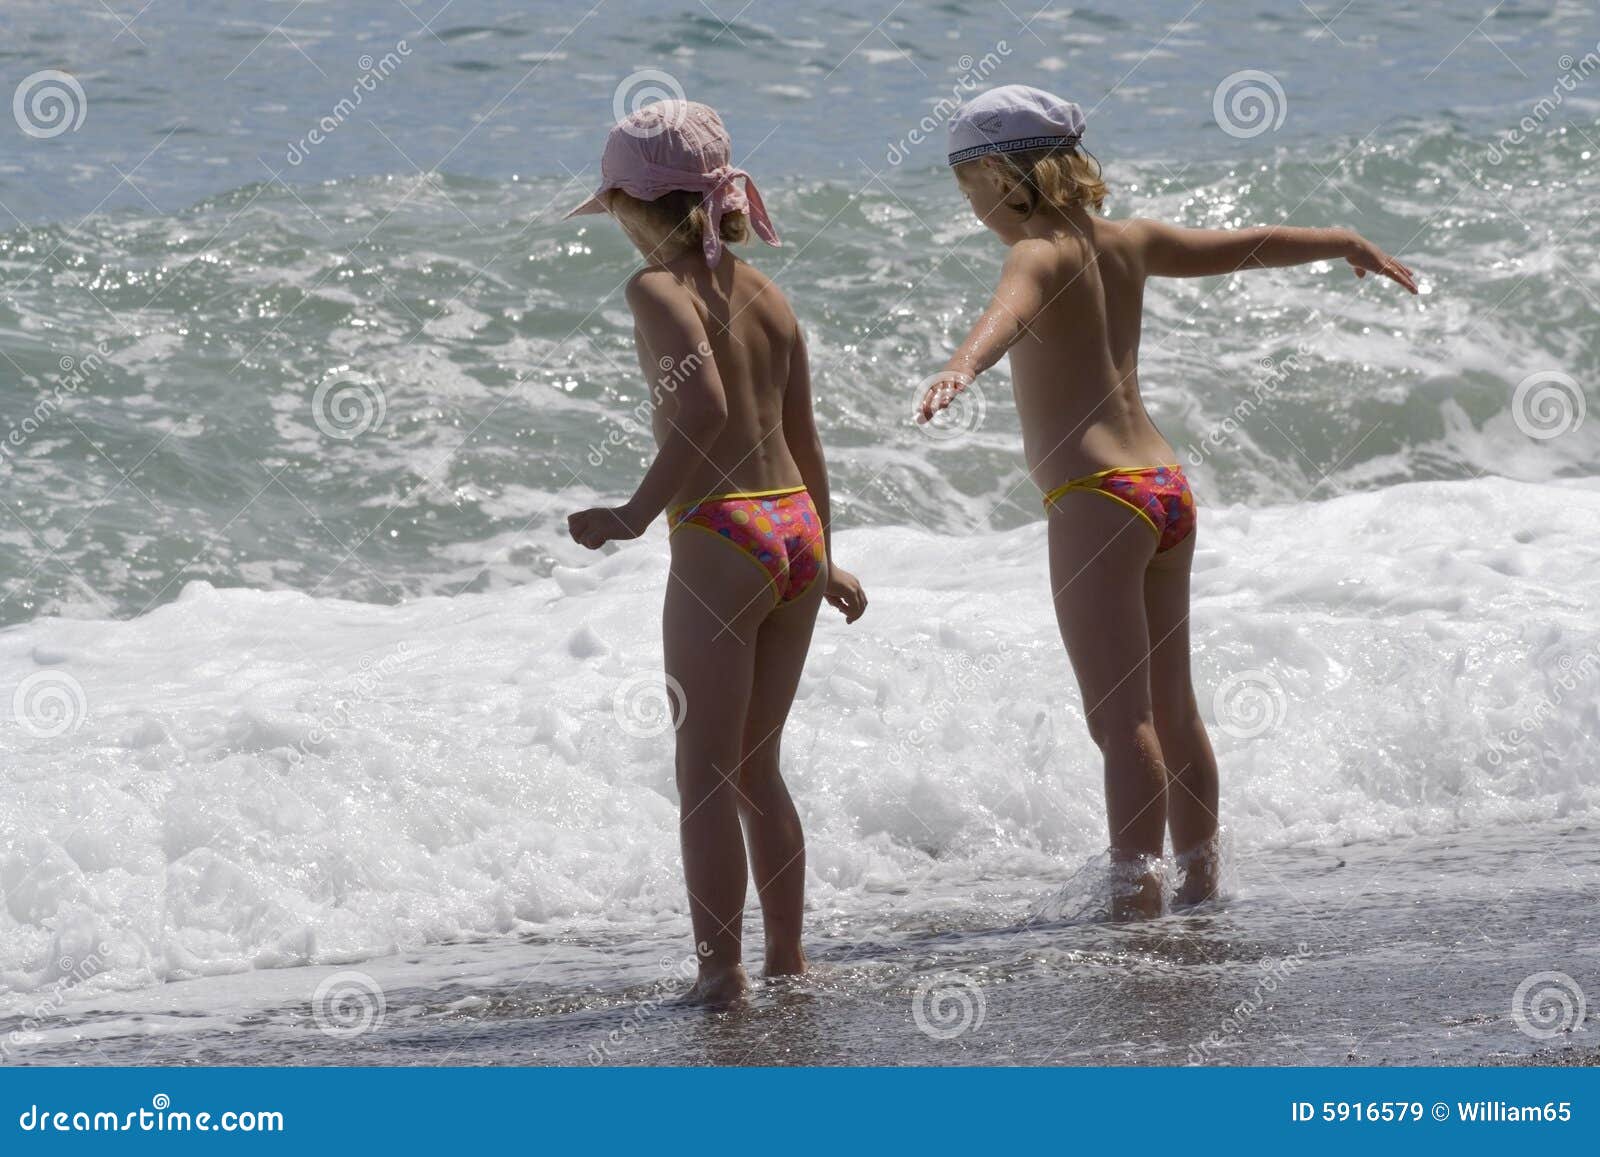 нудиский пляж с голыми детьми фото 3